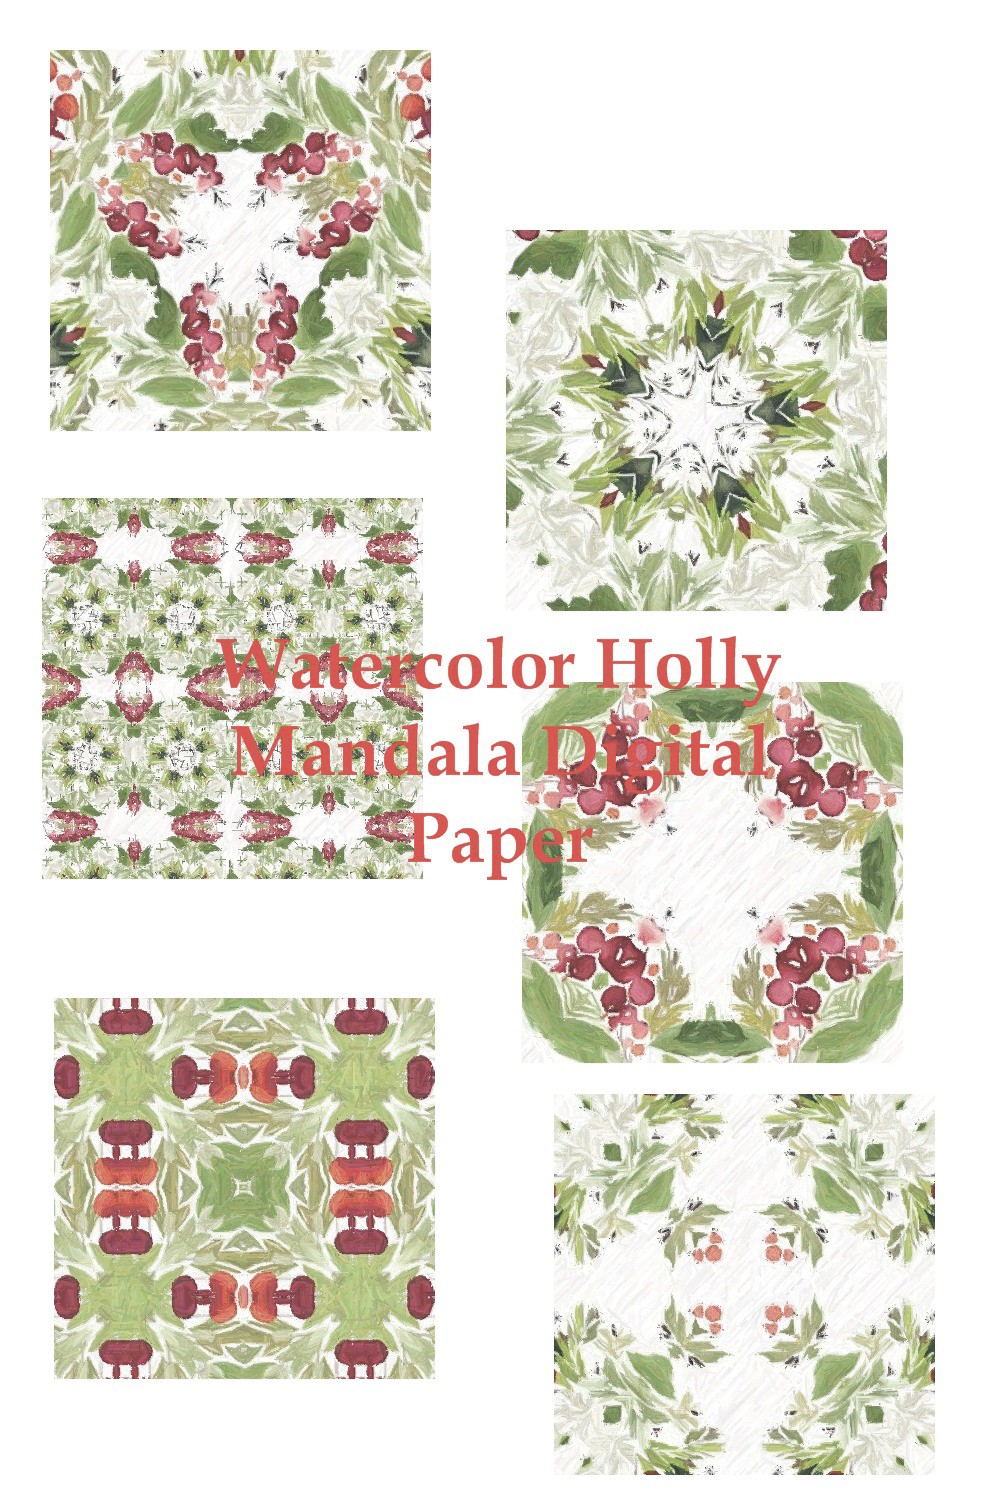 Watercolor Holly Mandala Digital Paper Design pinterest image.